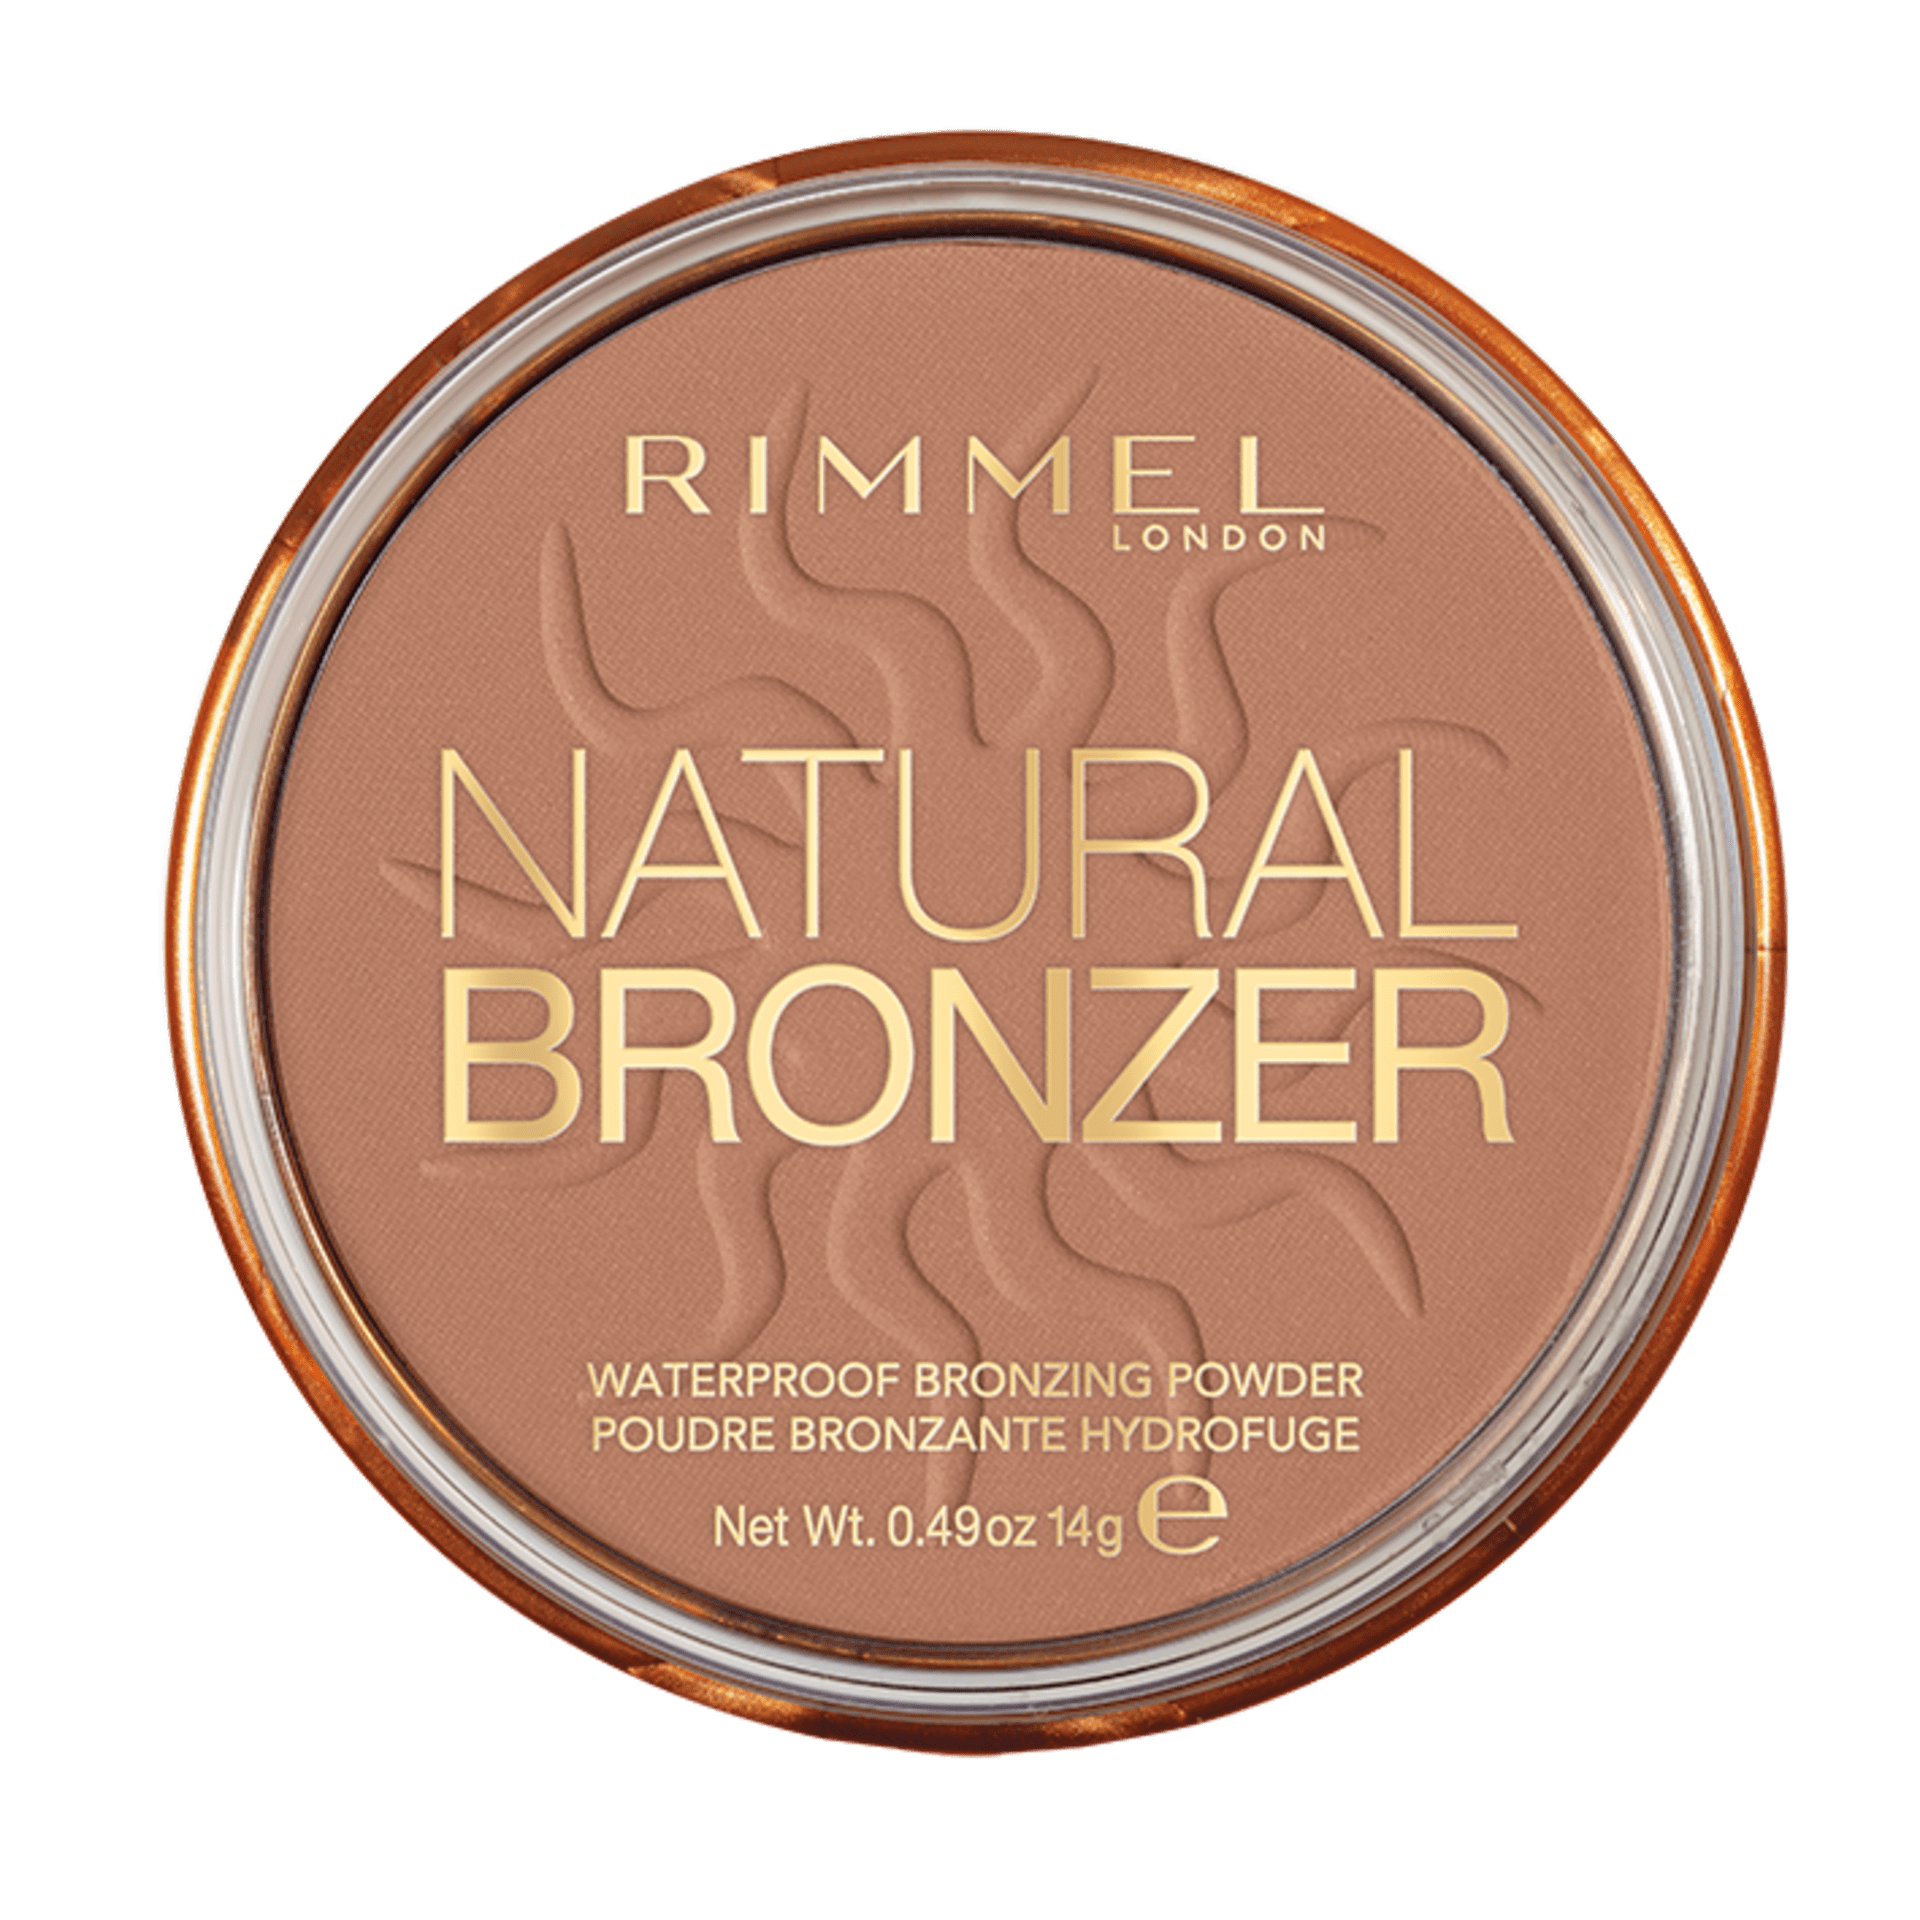 Gymnast Ontoegankelijk vertegenwoordiger Makeup Products, Trends and the Latest Looks | Rimmel London